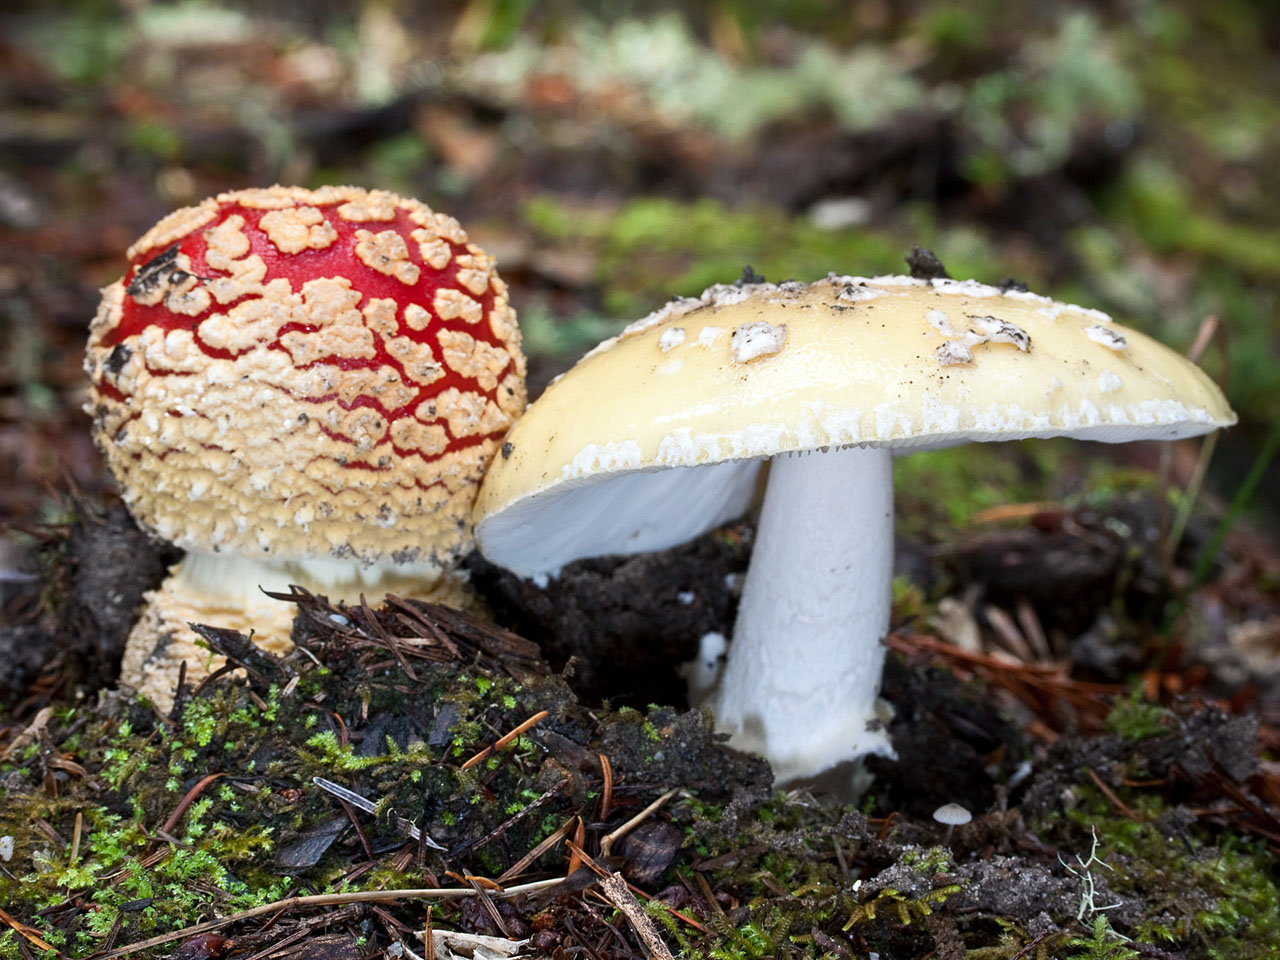 Мухомор ? описание внешнего вида гриба, особенности строения